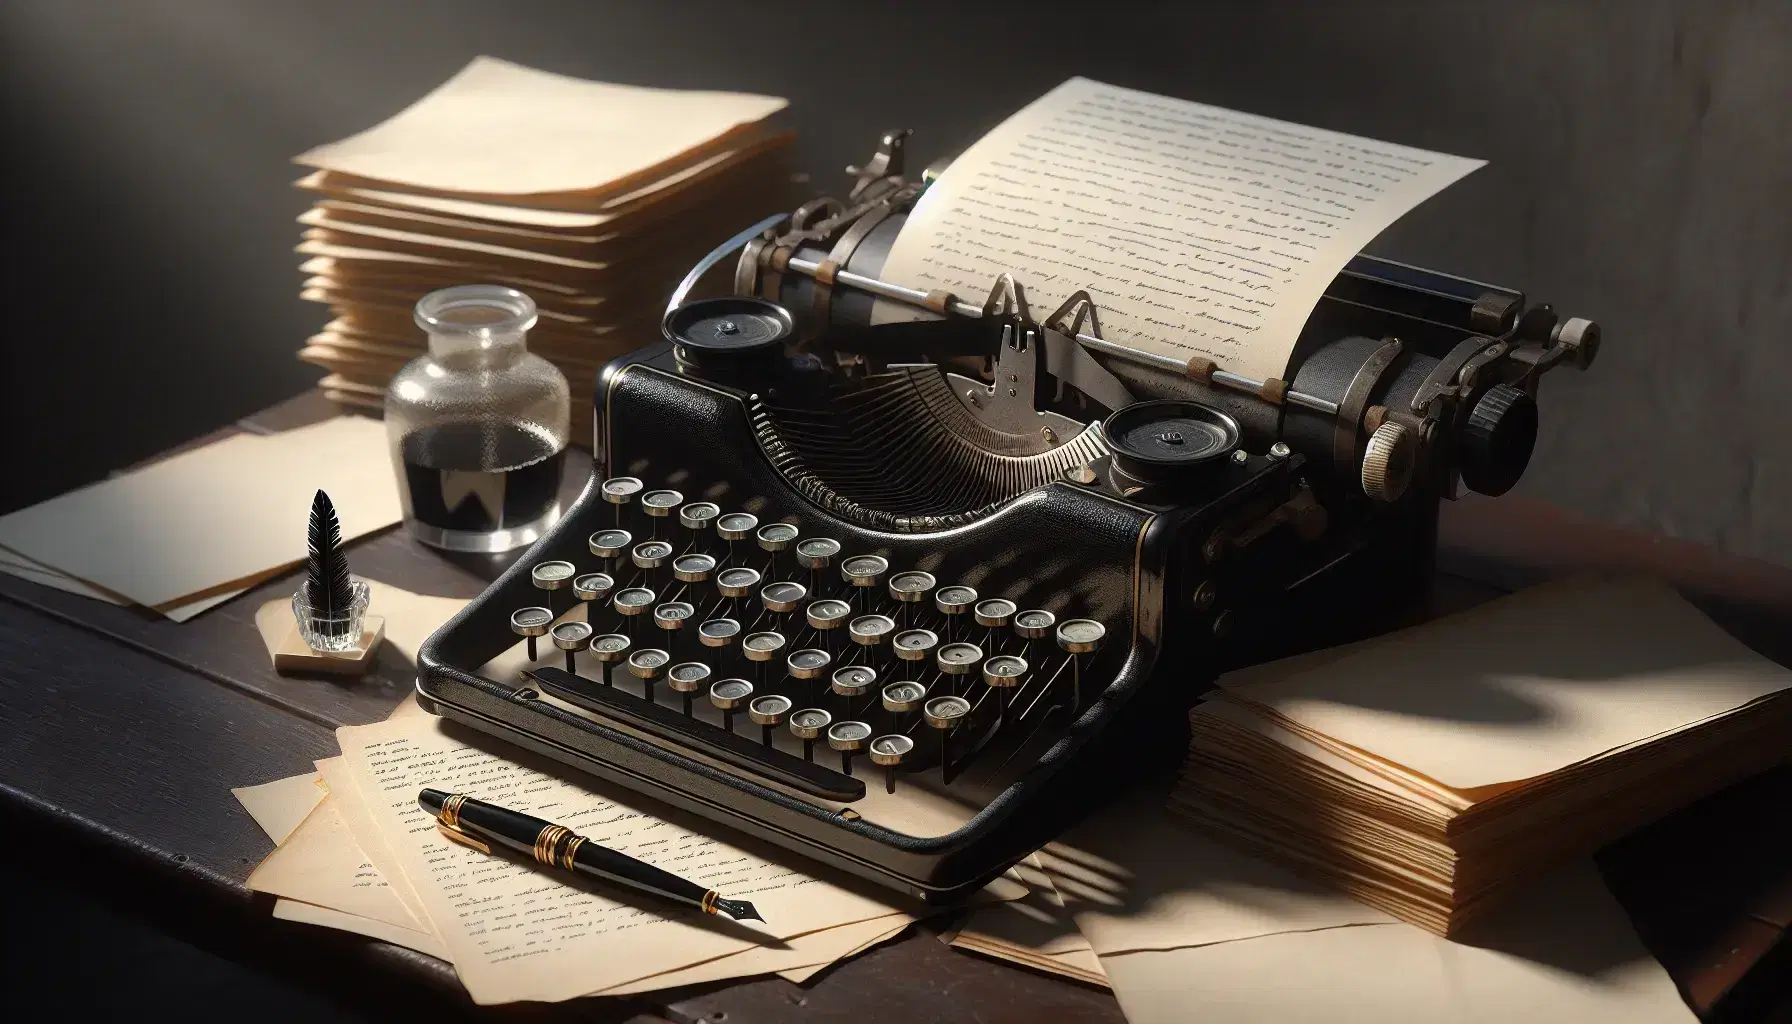 Máquina de escribir antigua con teclas blancas sobre mesa de madera oscura, junto a tintero con pluma y libro abierto, en ambiente sombreado.